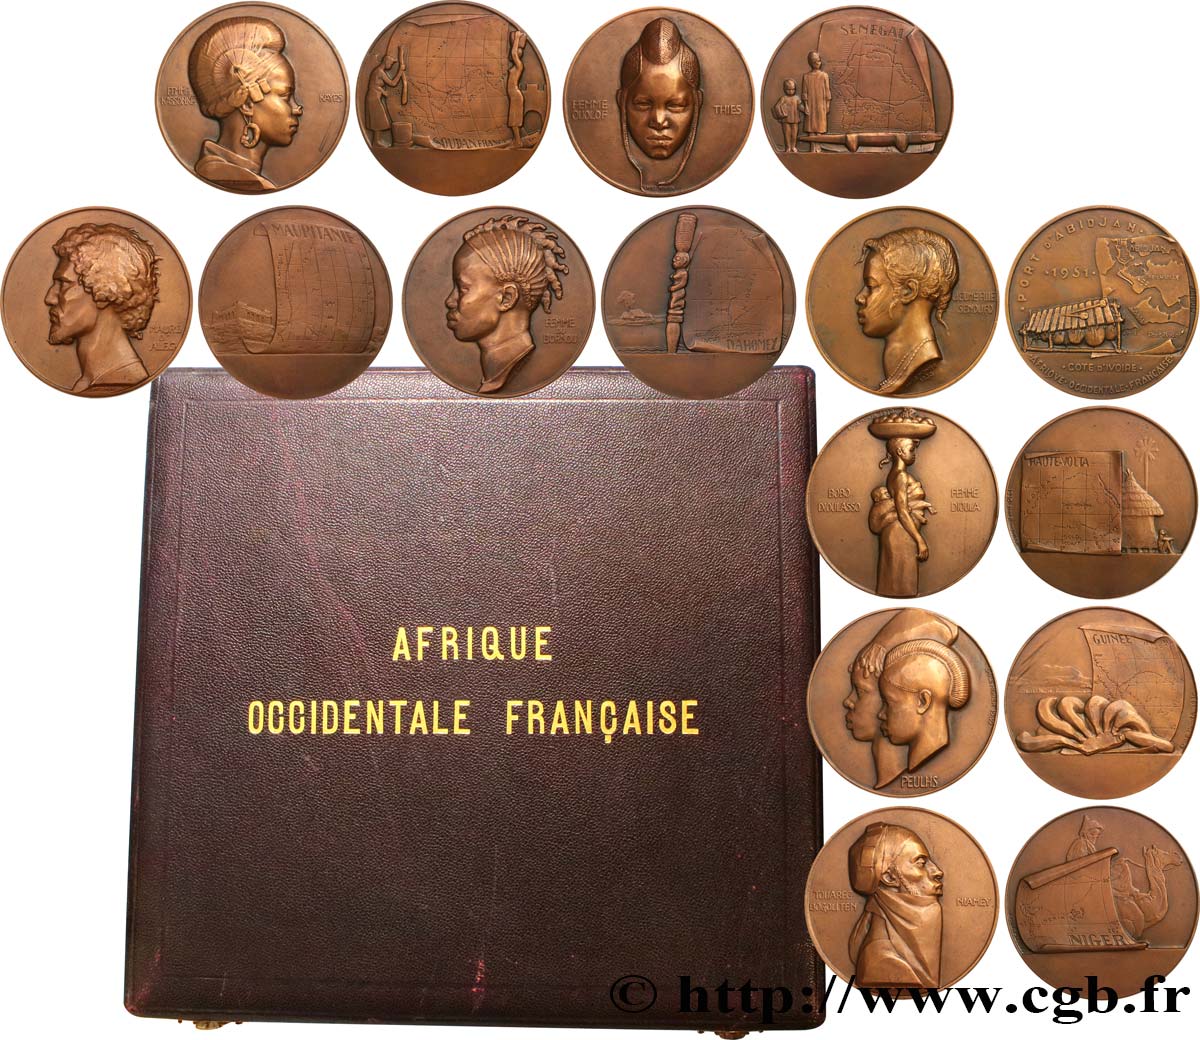 AFRICA OCCIDENTALE FRANCESA  Coffret de 8 médailles, Afrique Occidentale Française, les populations d’Afrique de l’Ouest SPL